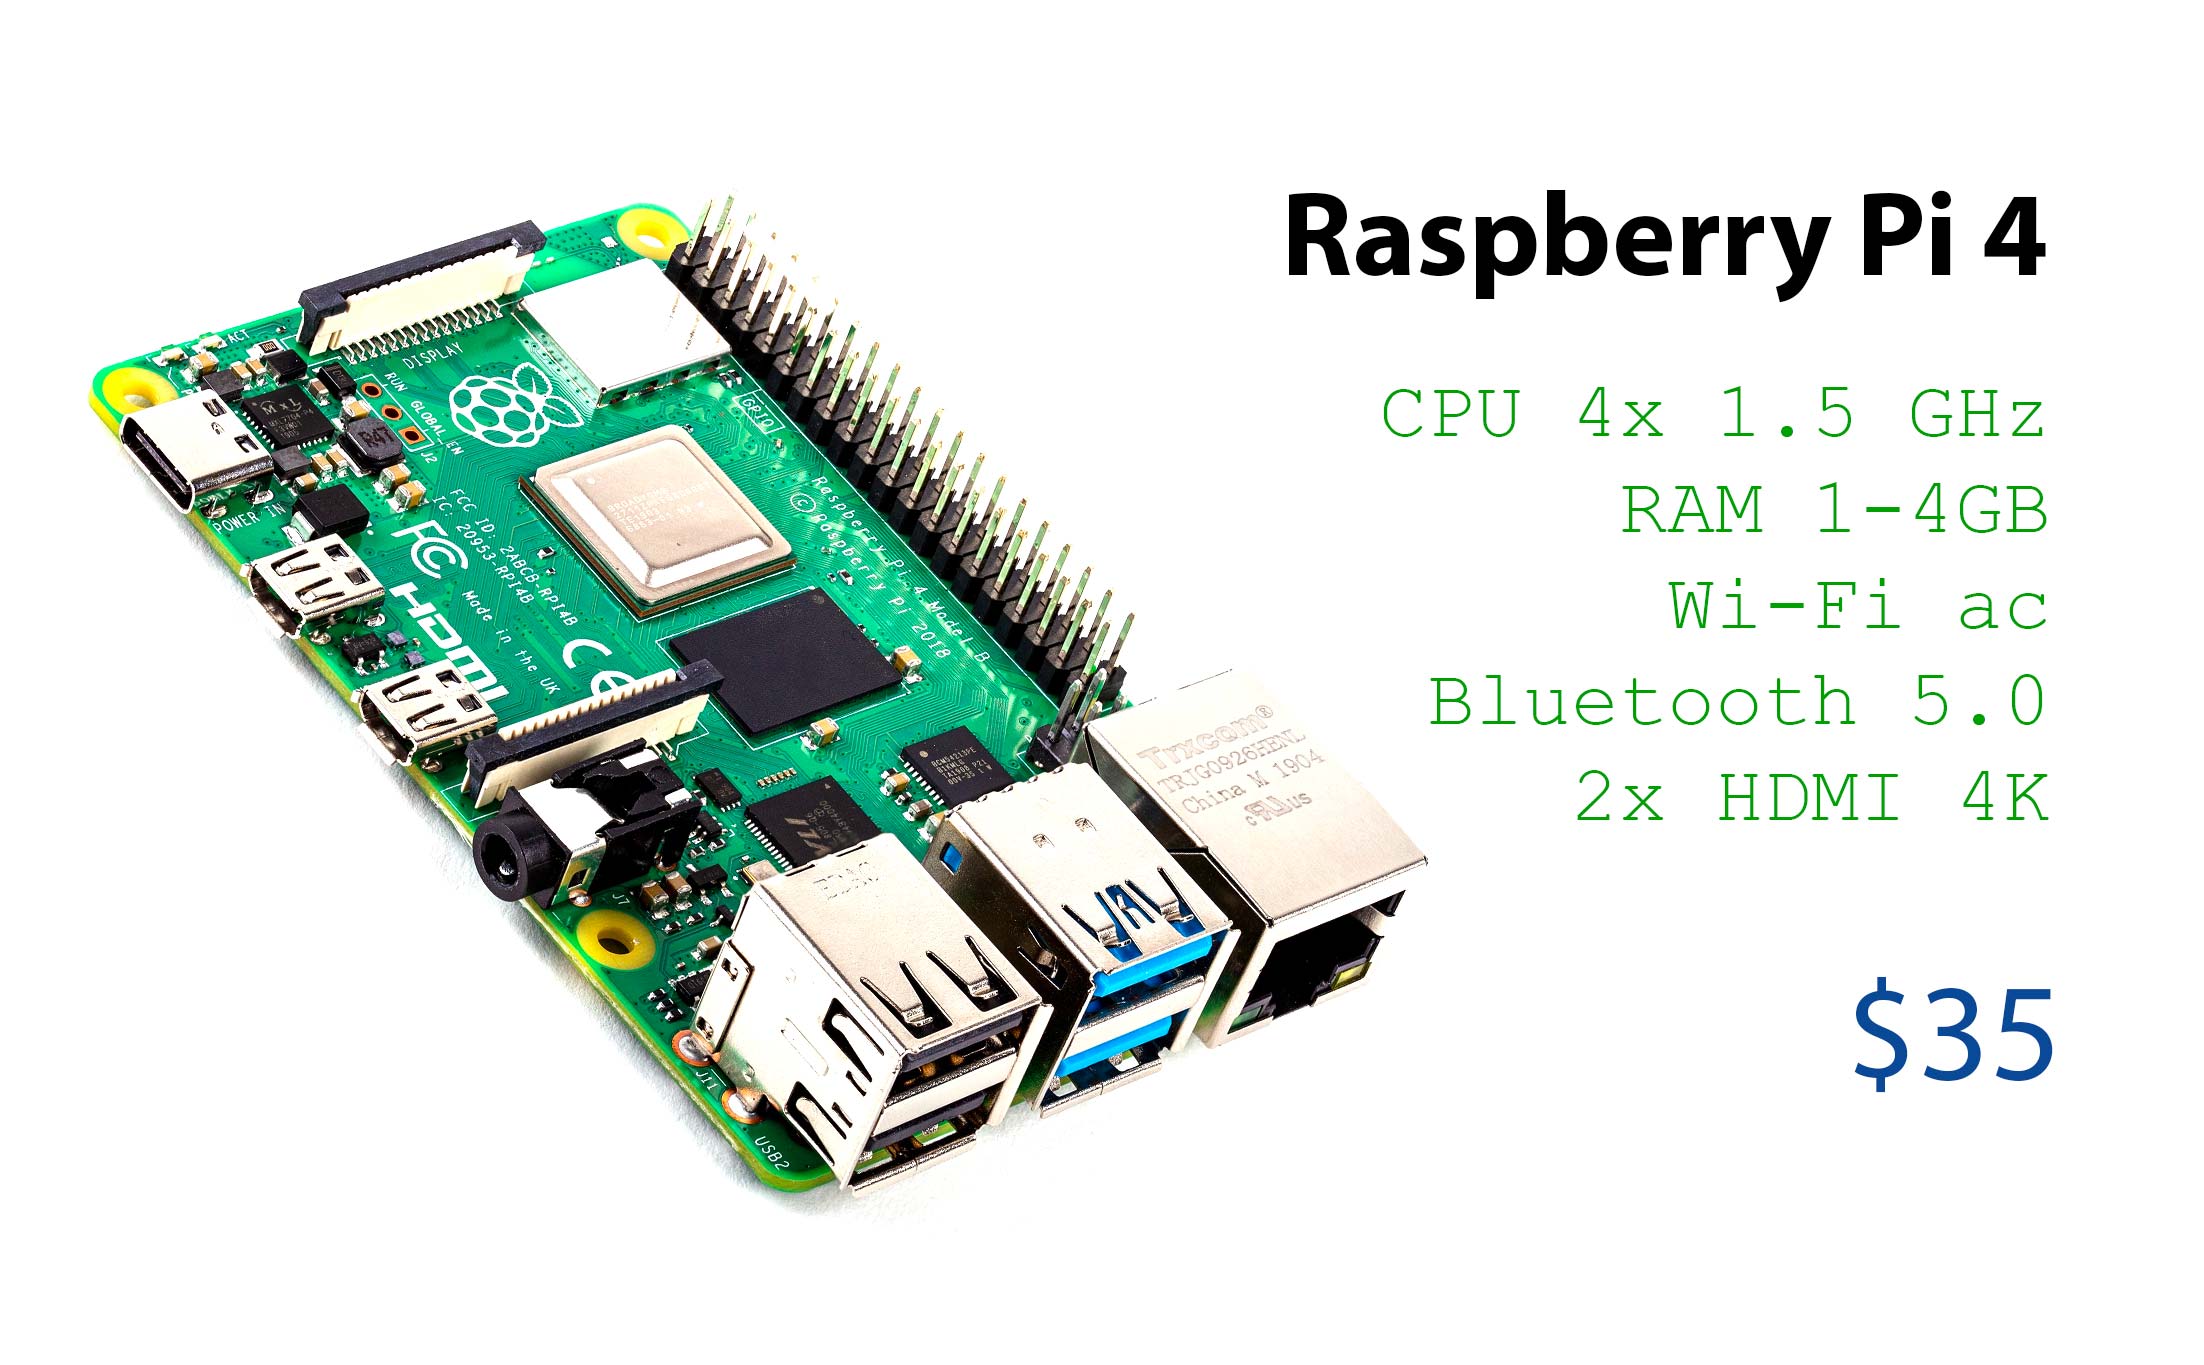 Raspberry Pi 4 chính thức: CPU nhanh hơn 3 lần, xuất 2 màn hình 4K, kết nối nhanh hơn, giá từ $35